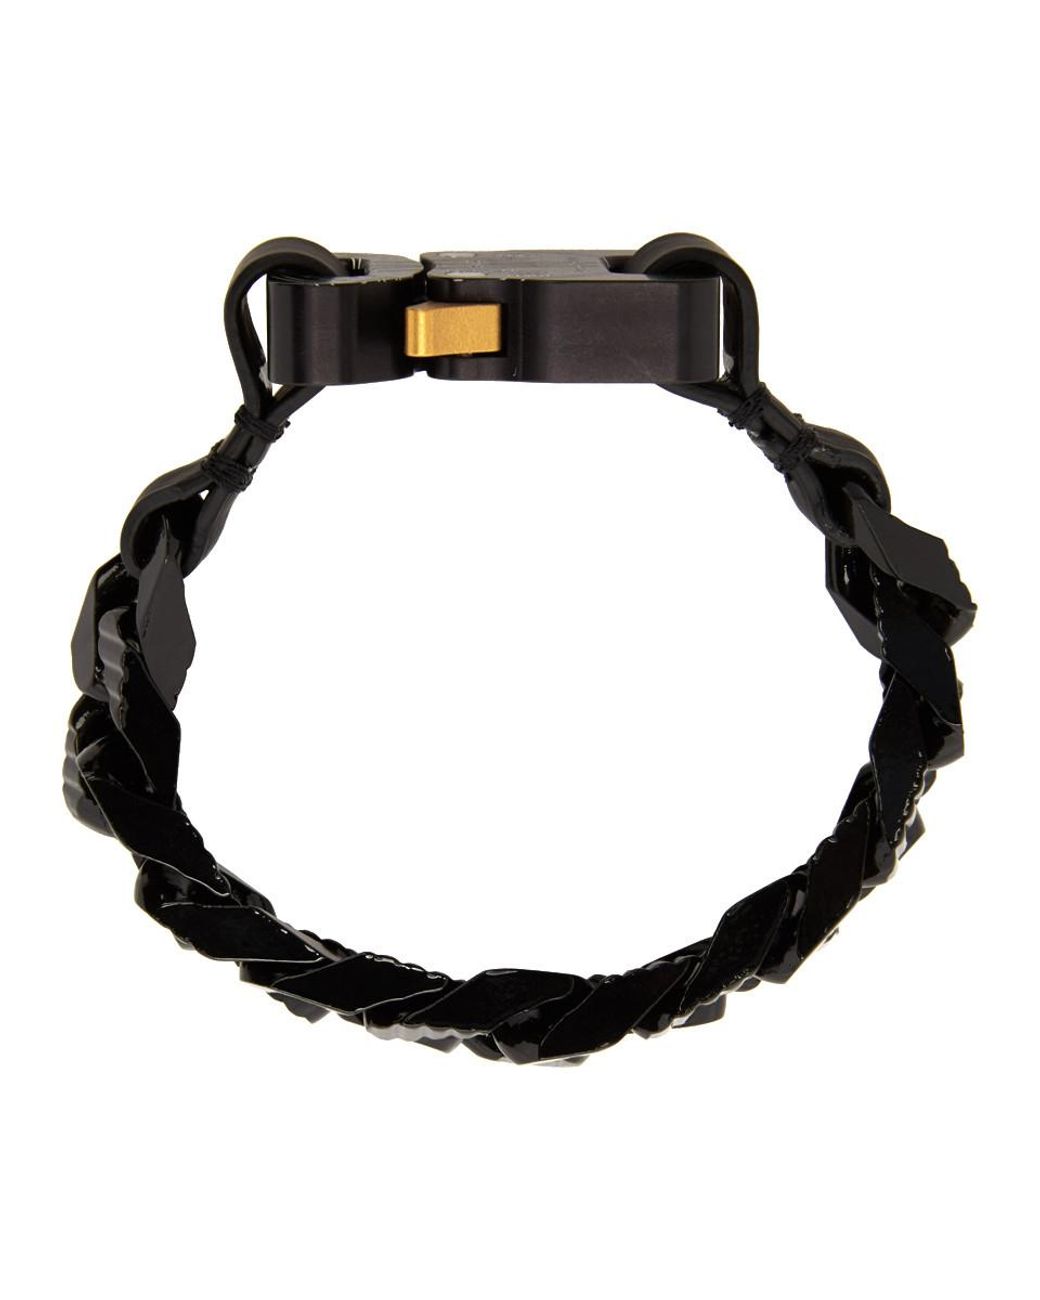 Moncler Genius 6 Moncler 1017 Alyx 9sm Black Chain Link Buckle Bracelet |  Lyst